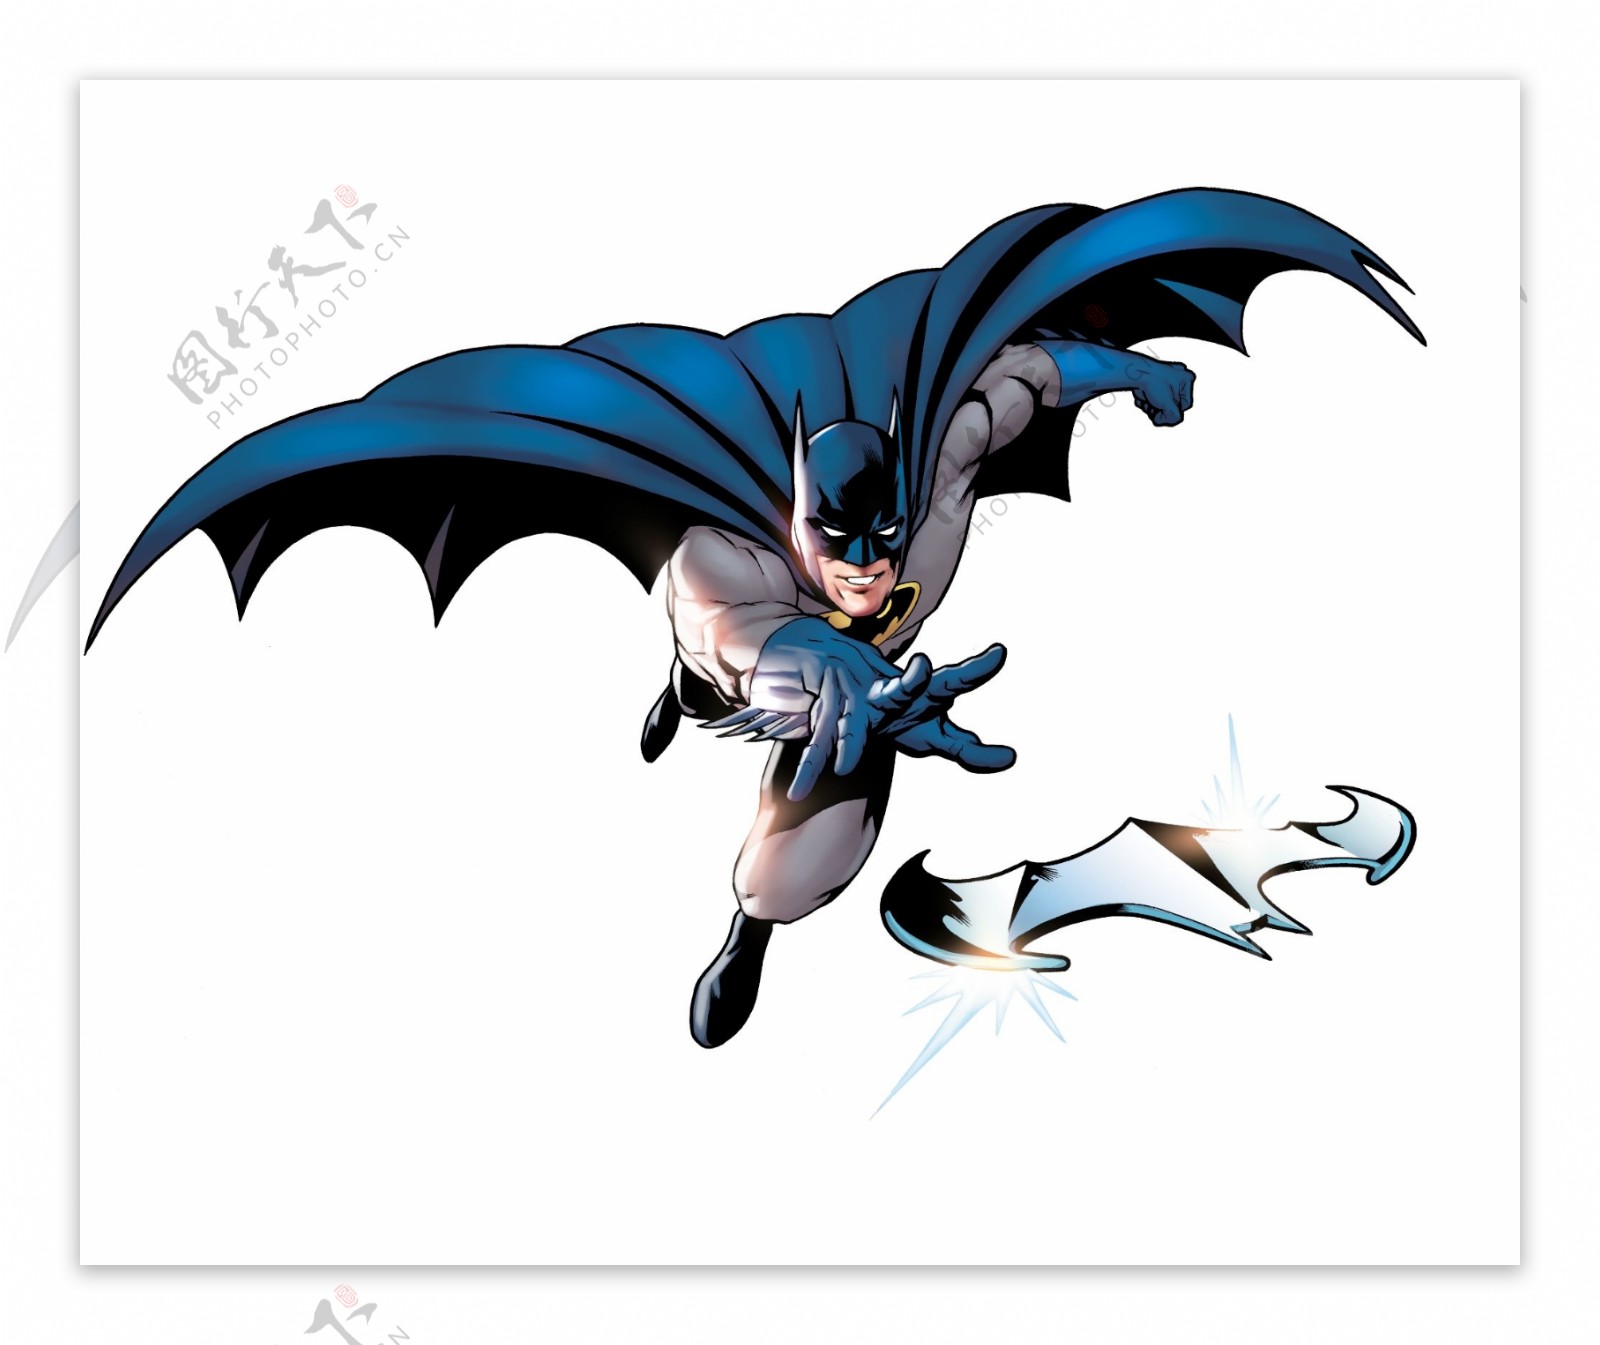 壁纸 : 蝙蝠侠, 艺术品, DC漫画 3840x2160 - angelomeneghini - 2013635 - 电脑桌面壁纸 - WallHere 壁纸库